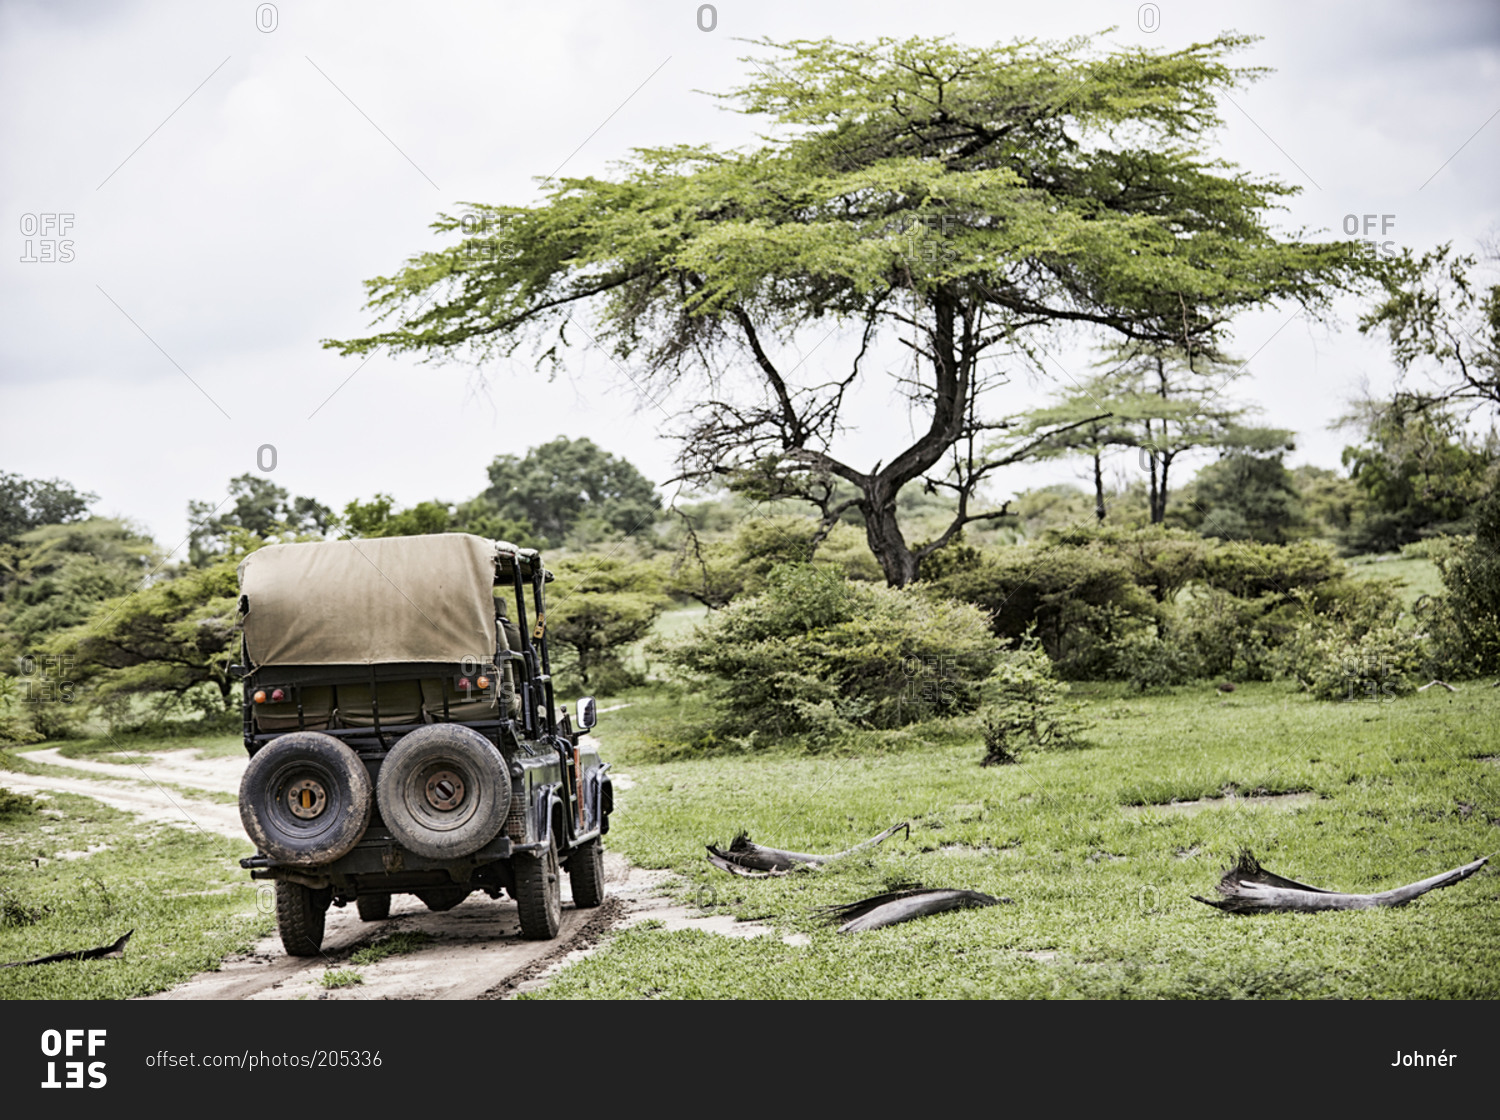 Vehicle on safari the African savannah